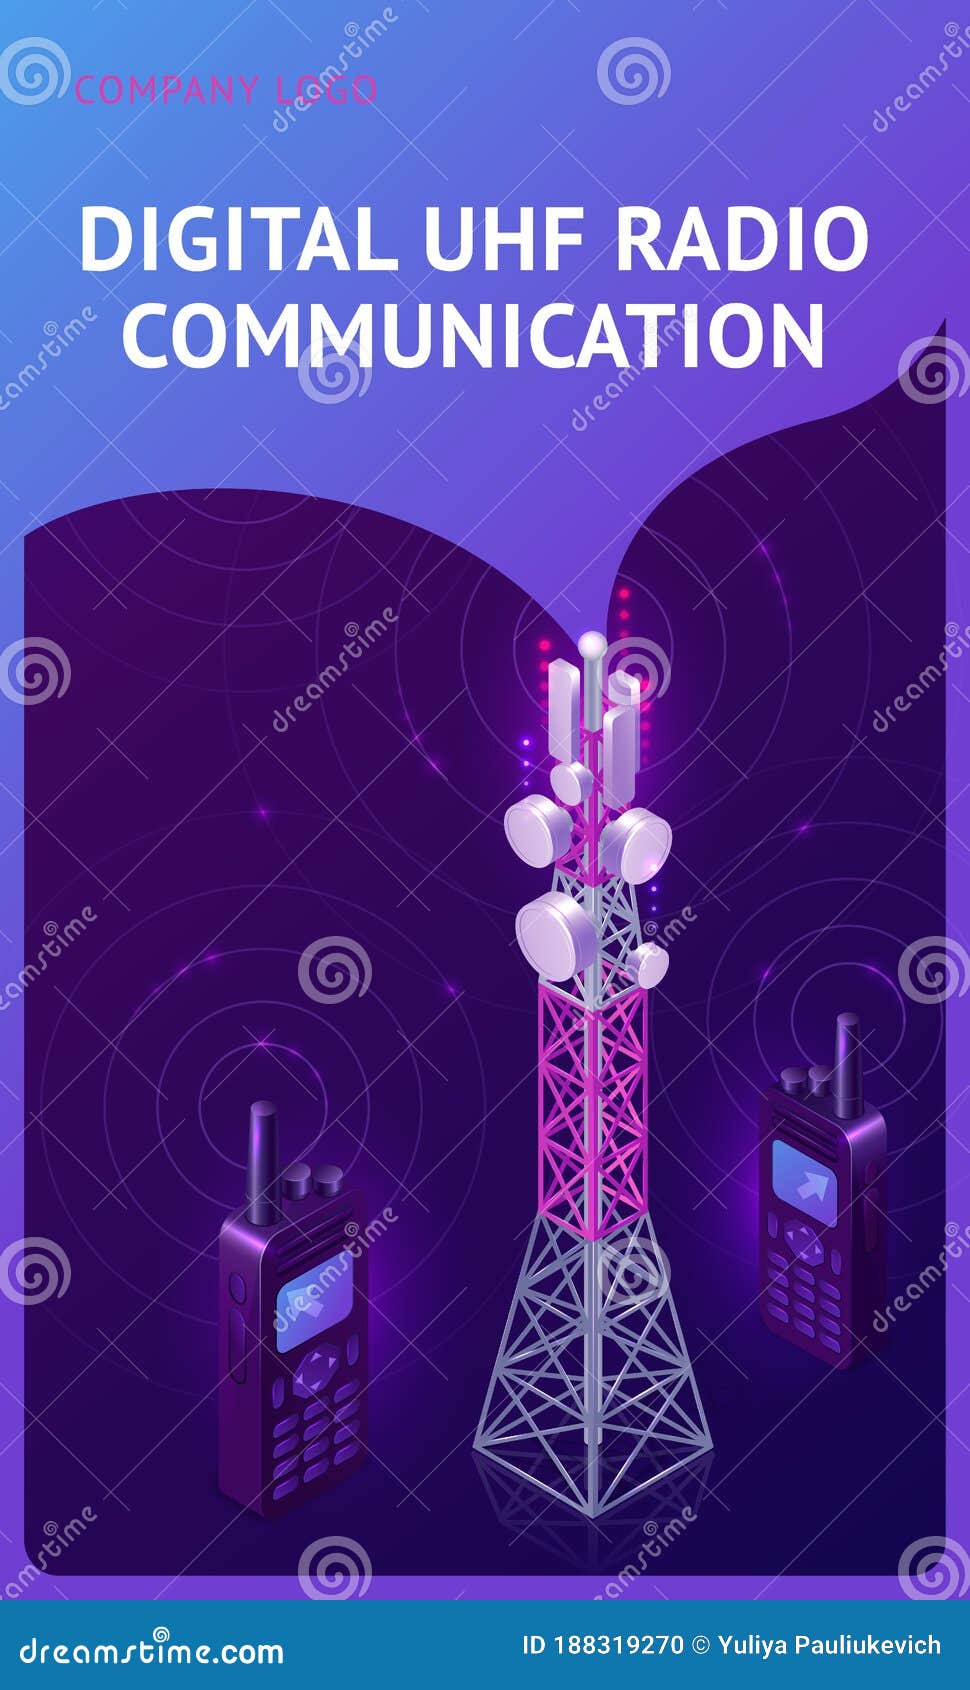 digital uhf radio communication isometric banner